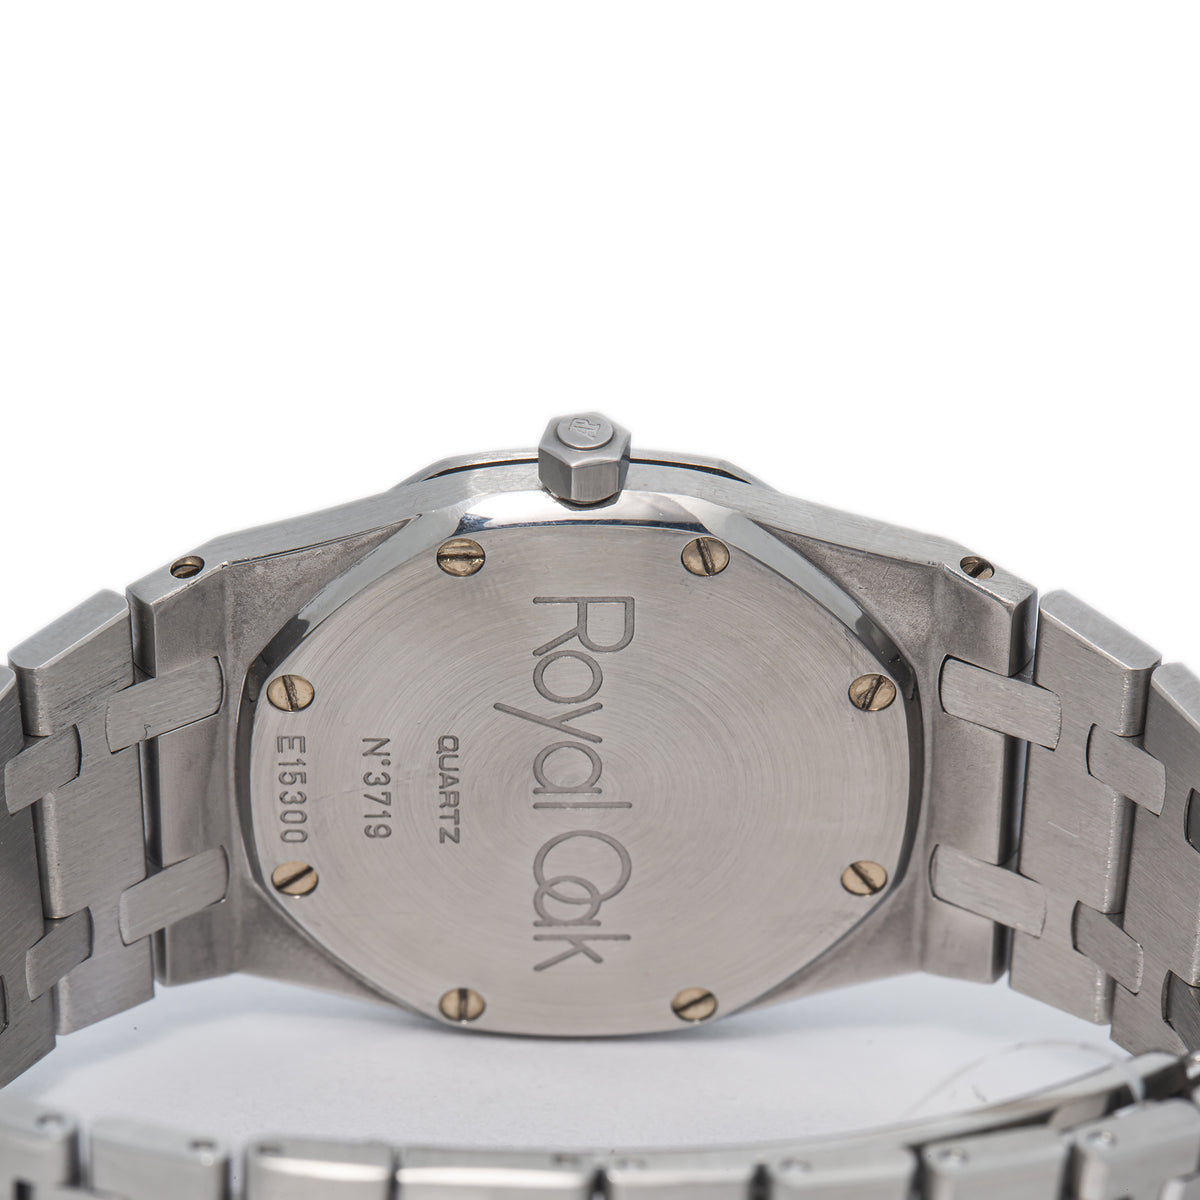 Audemars Piguet Royal Oak 56175ST MINT Steel Dark Blue Dial Quartz Watch 33mm